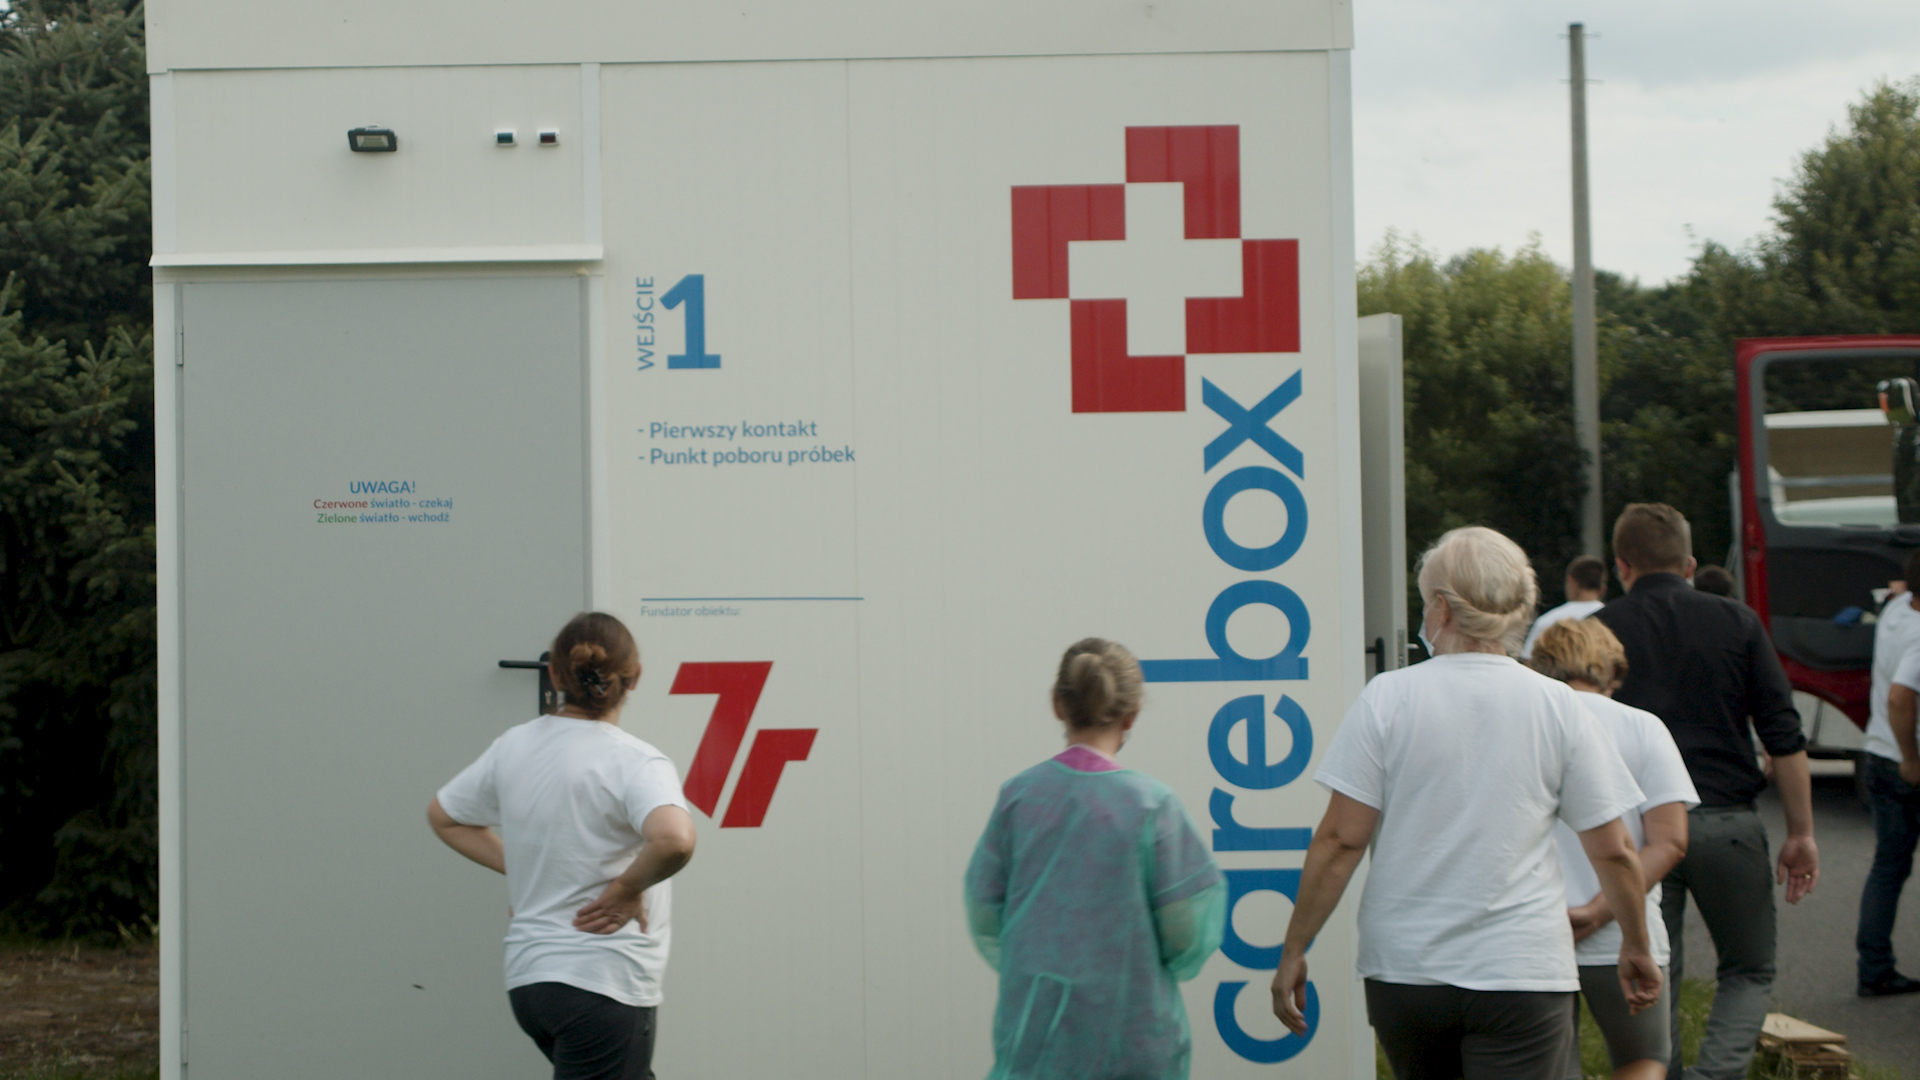 Mobilna izba przyjęć od 7R obsługuje pacjentów szpitala w Starachowicach